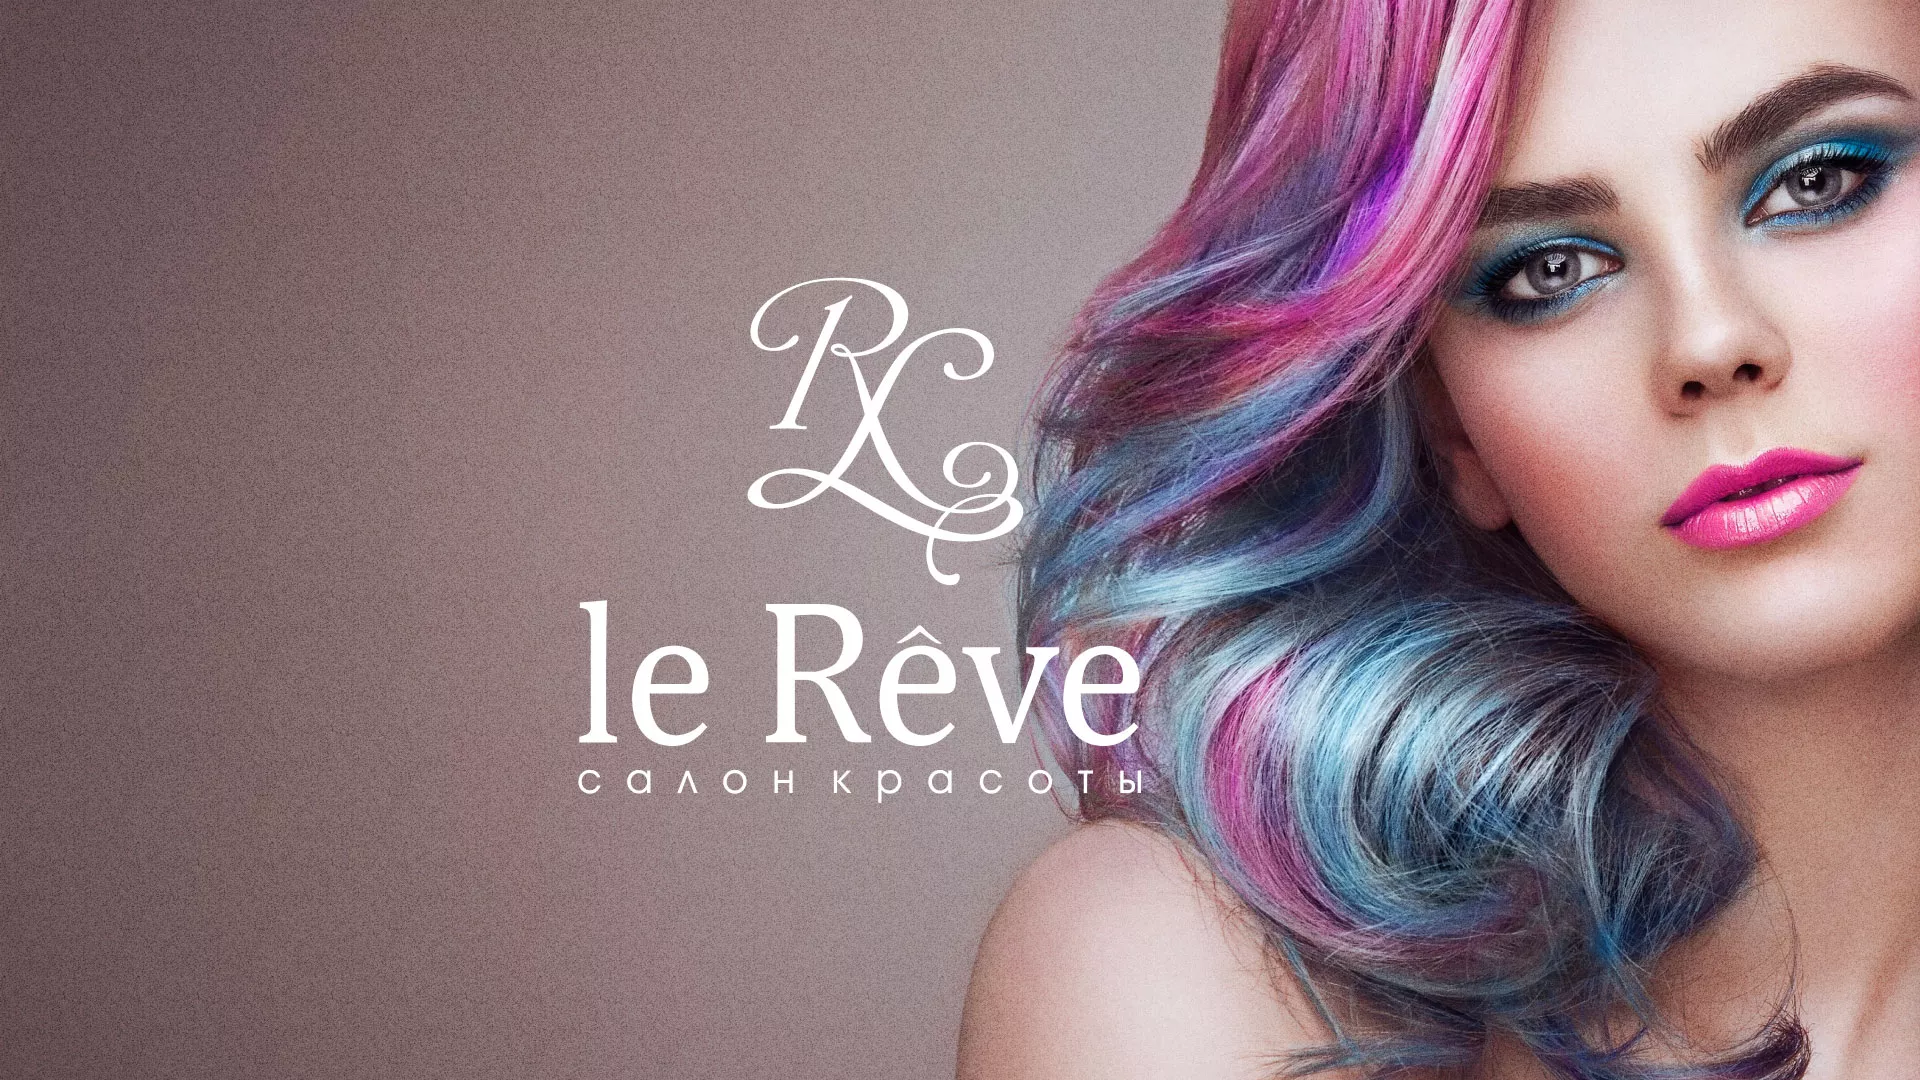 Создание сайта для салона красоты «Le Reve» в Химках